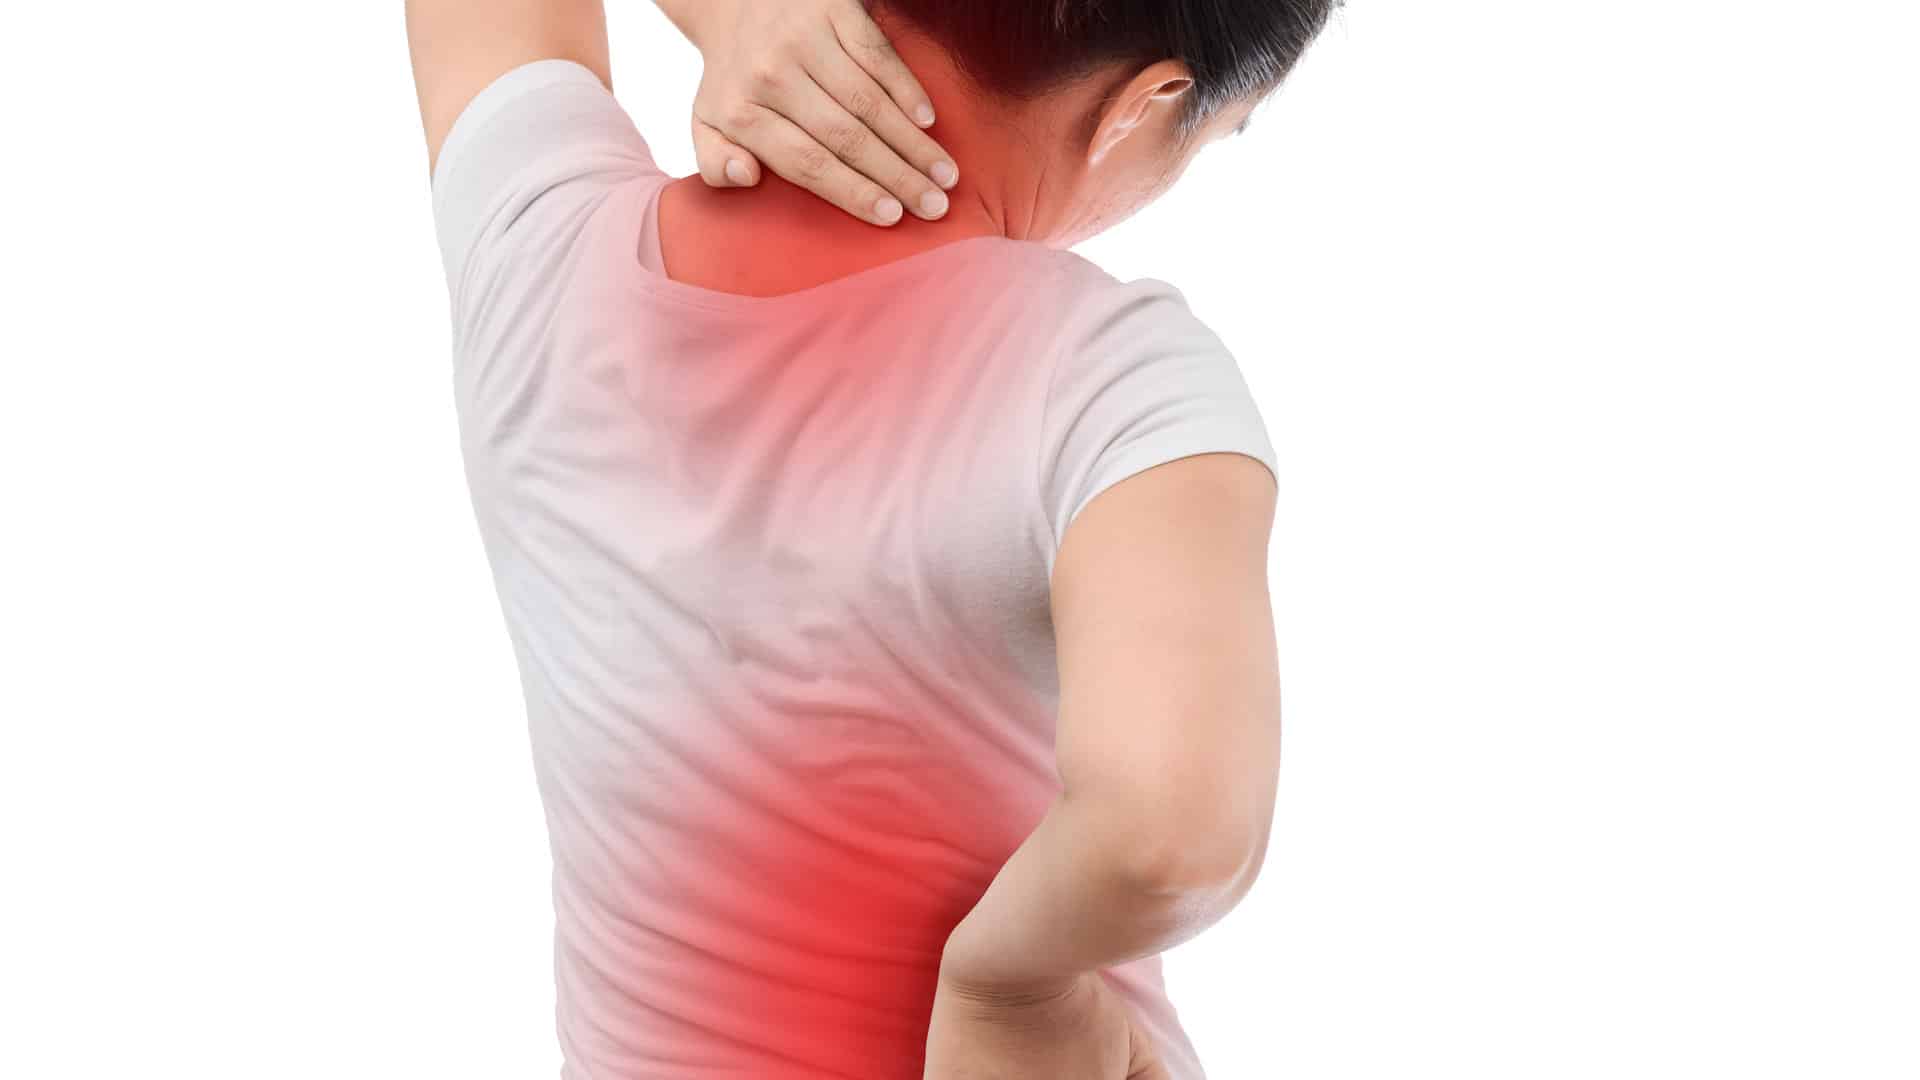 Schmerztherapie bei Nacken- und Rückenbeschwerden